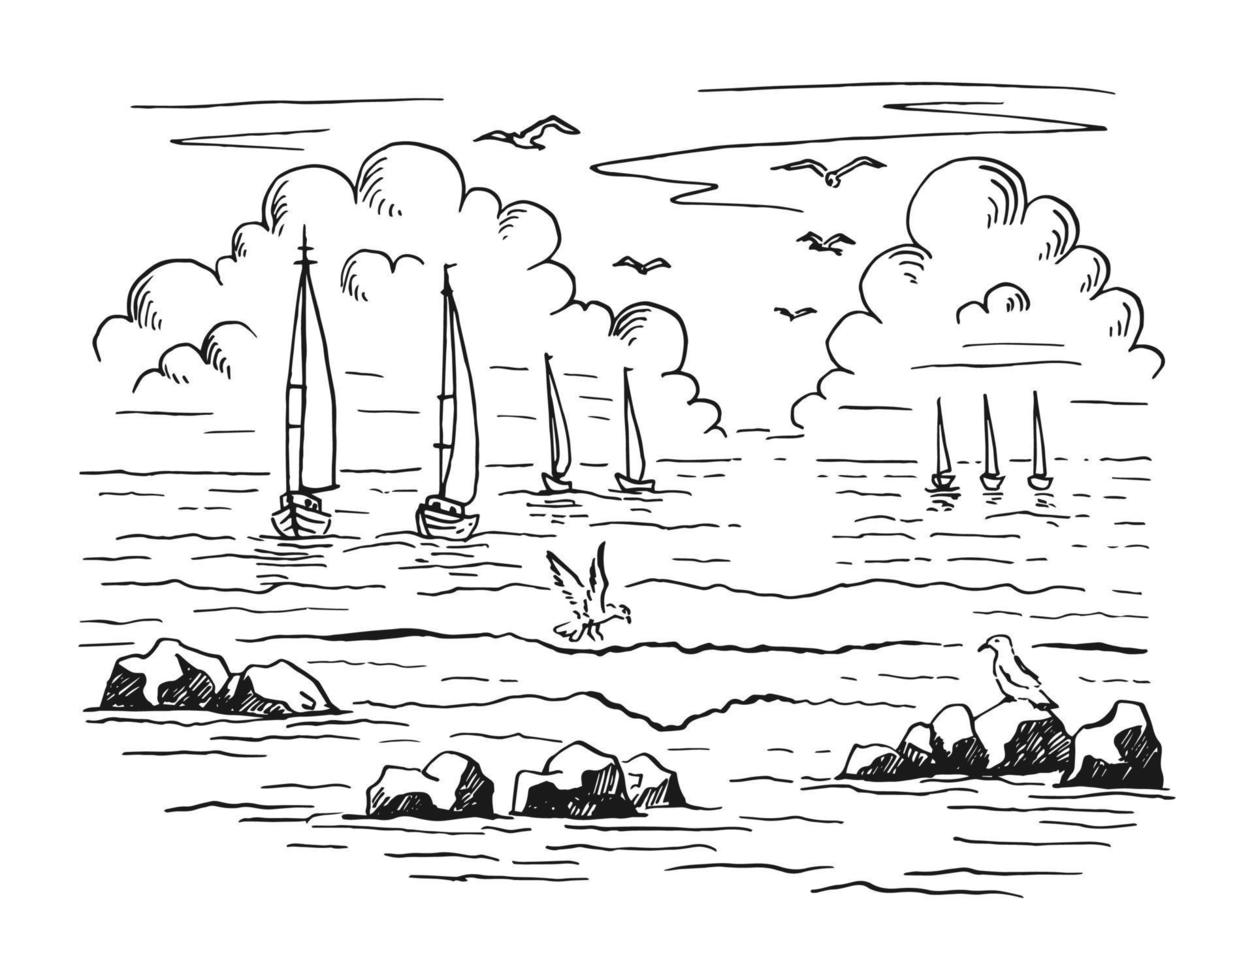 paesaggio marino. paesaggio, mare, barca a vela, rocce, gabbiani. illustrazione vettoriale disegnata a mano.